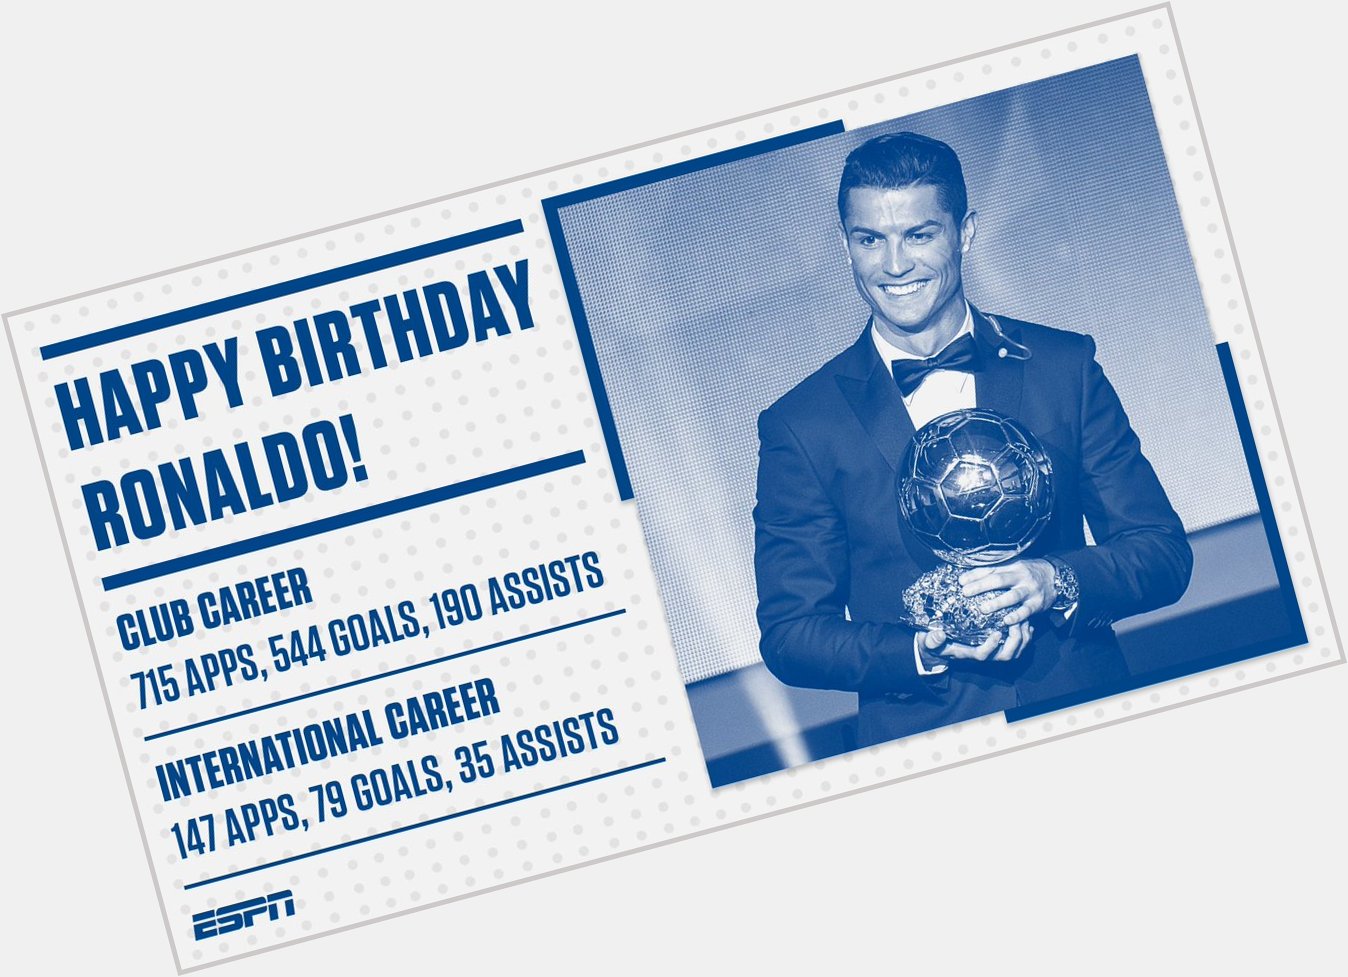 Happy Birthday Cristiano Ronaldo, 33 today! 